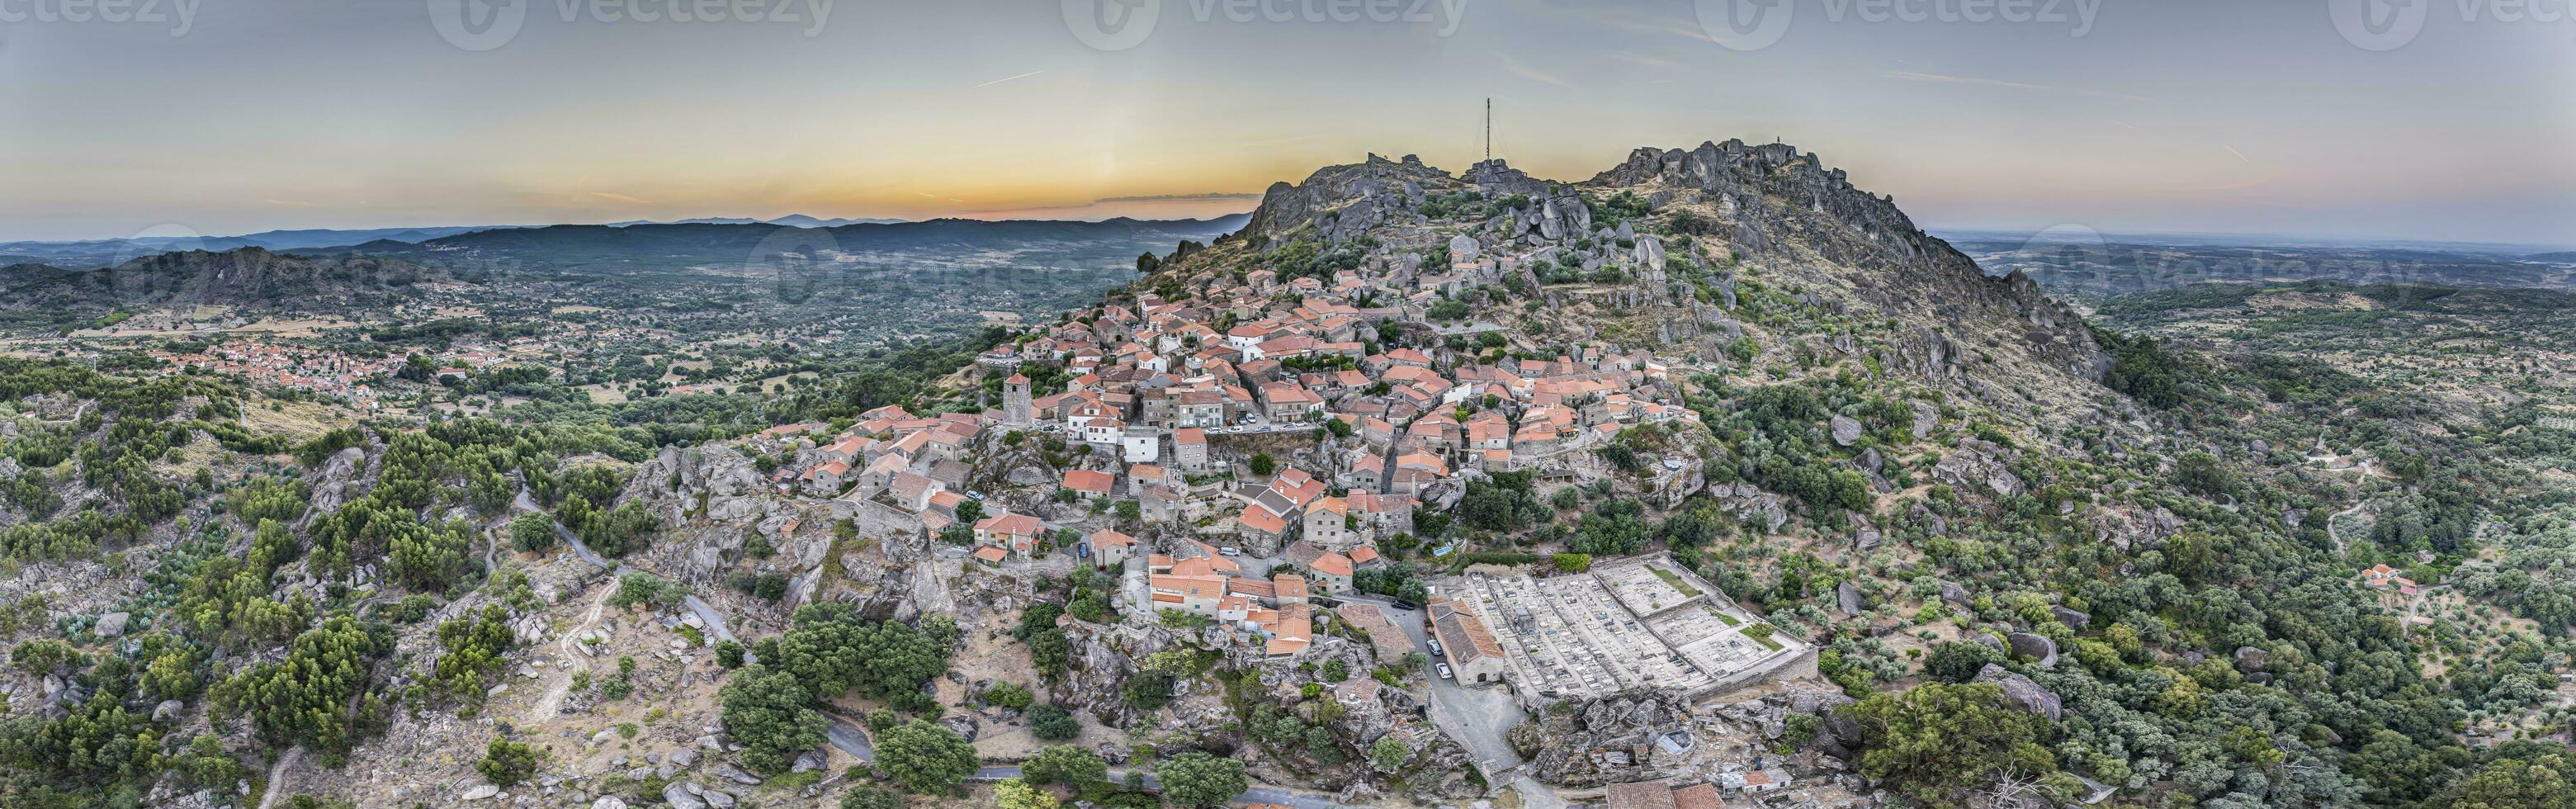 dar panorama van historisch stad en verrijking monsanto in Portugal in de ochtend- gedurende zonsopkomst foto